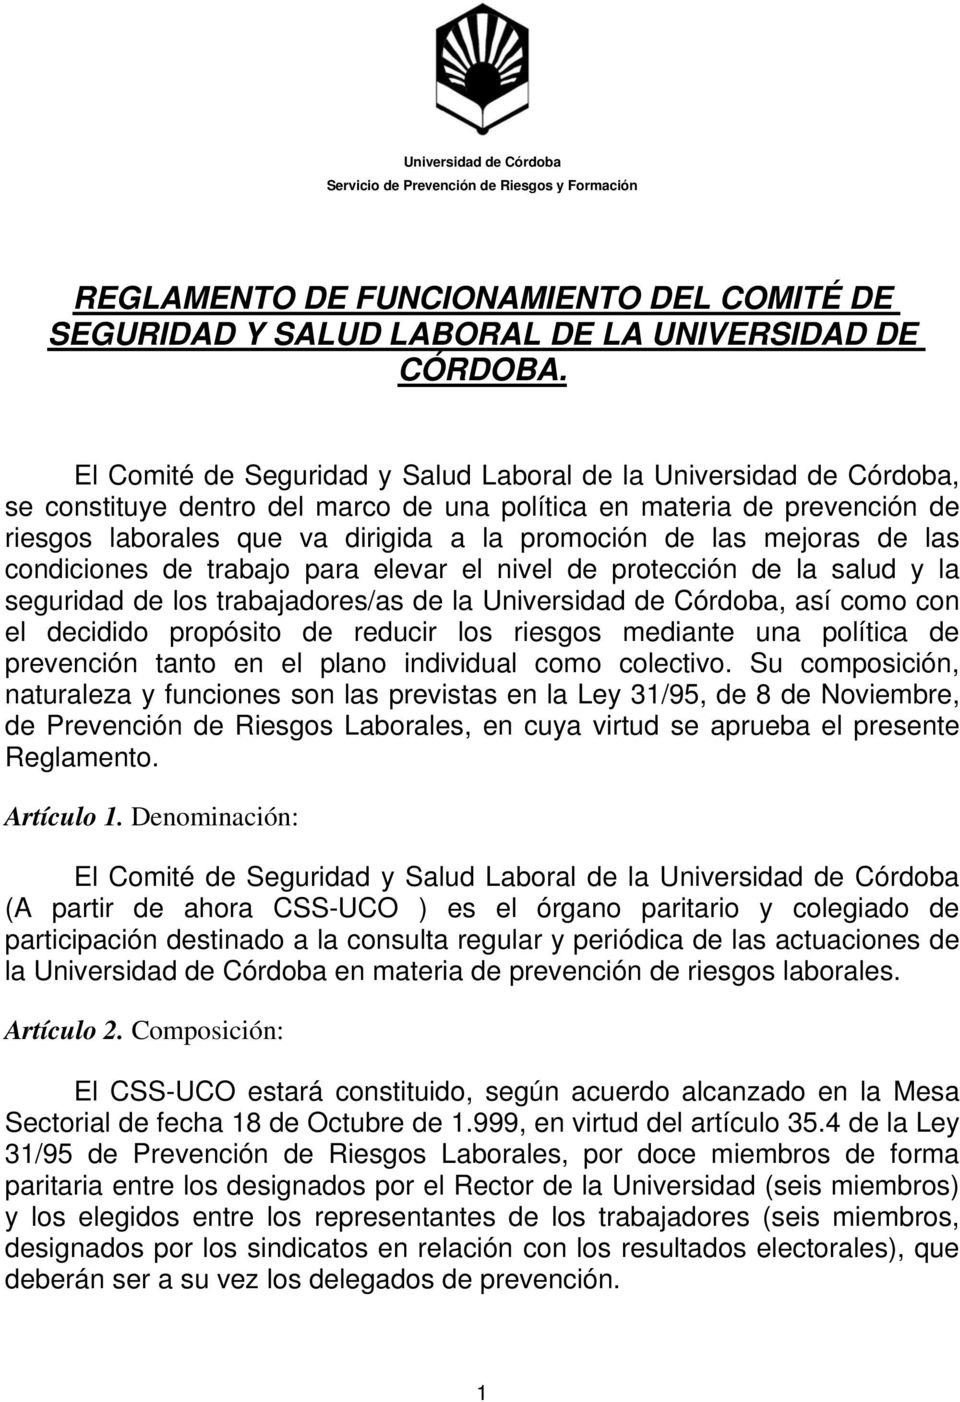 mejoras de las condiciones de trabajo para elevar el nivel de protección de la salud y la seguridad de los trabajadores/as de la Universidad de Córdoba, así como con el decidido propósito de reducir